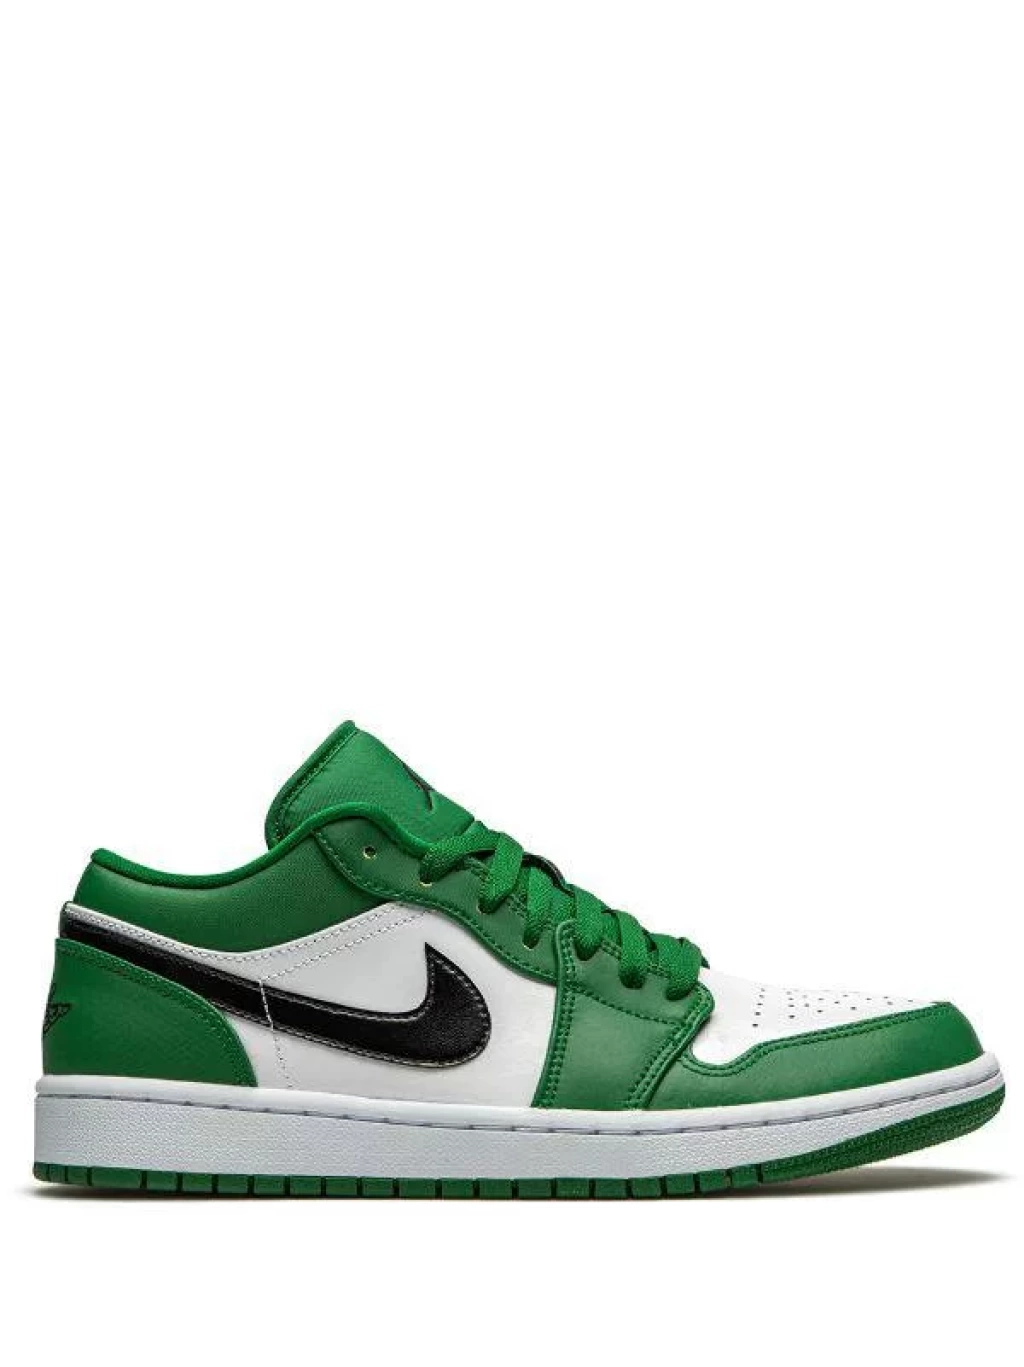 Найк 1 лоу. Nike Air Jordan 1 Low зеленые. Nike Air Jordan 1 Low Pine Green. Nike Air Jordan 1 Green. Nike Air Jordan 1 Low Green.